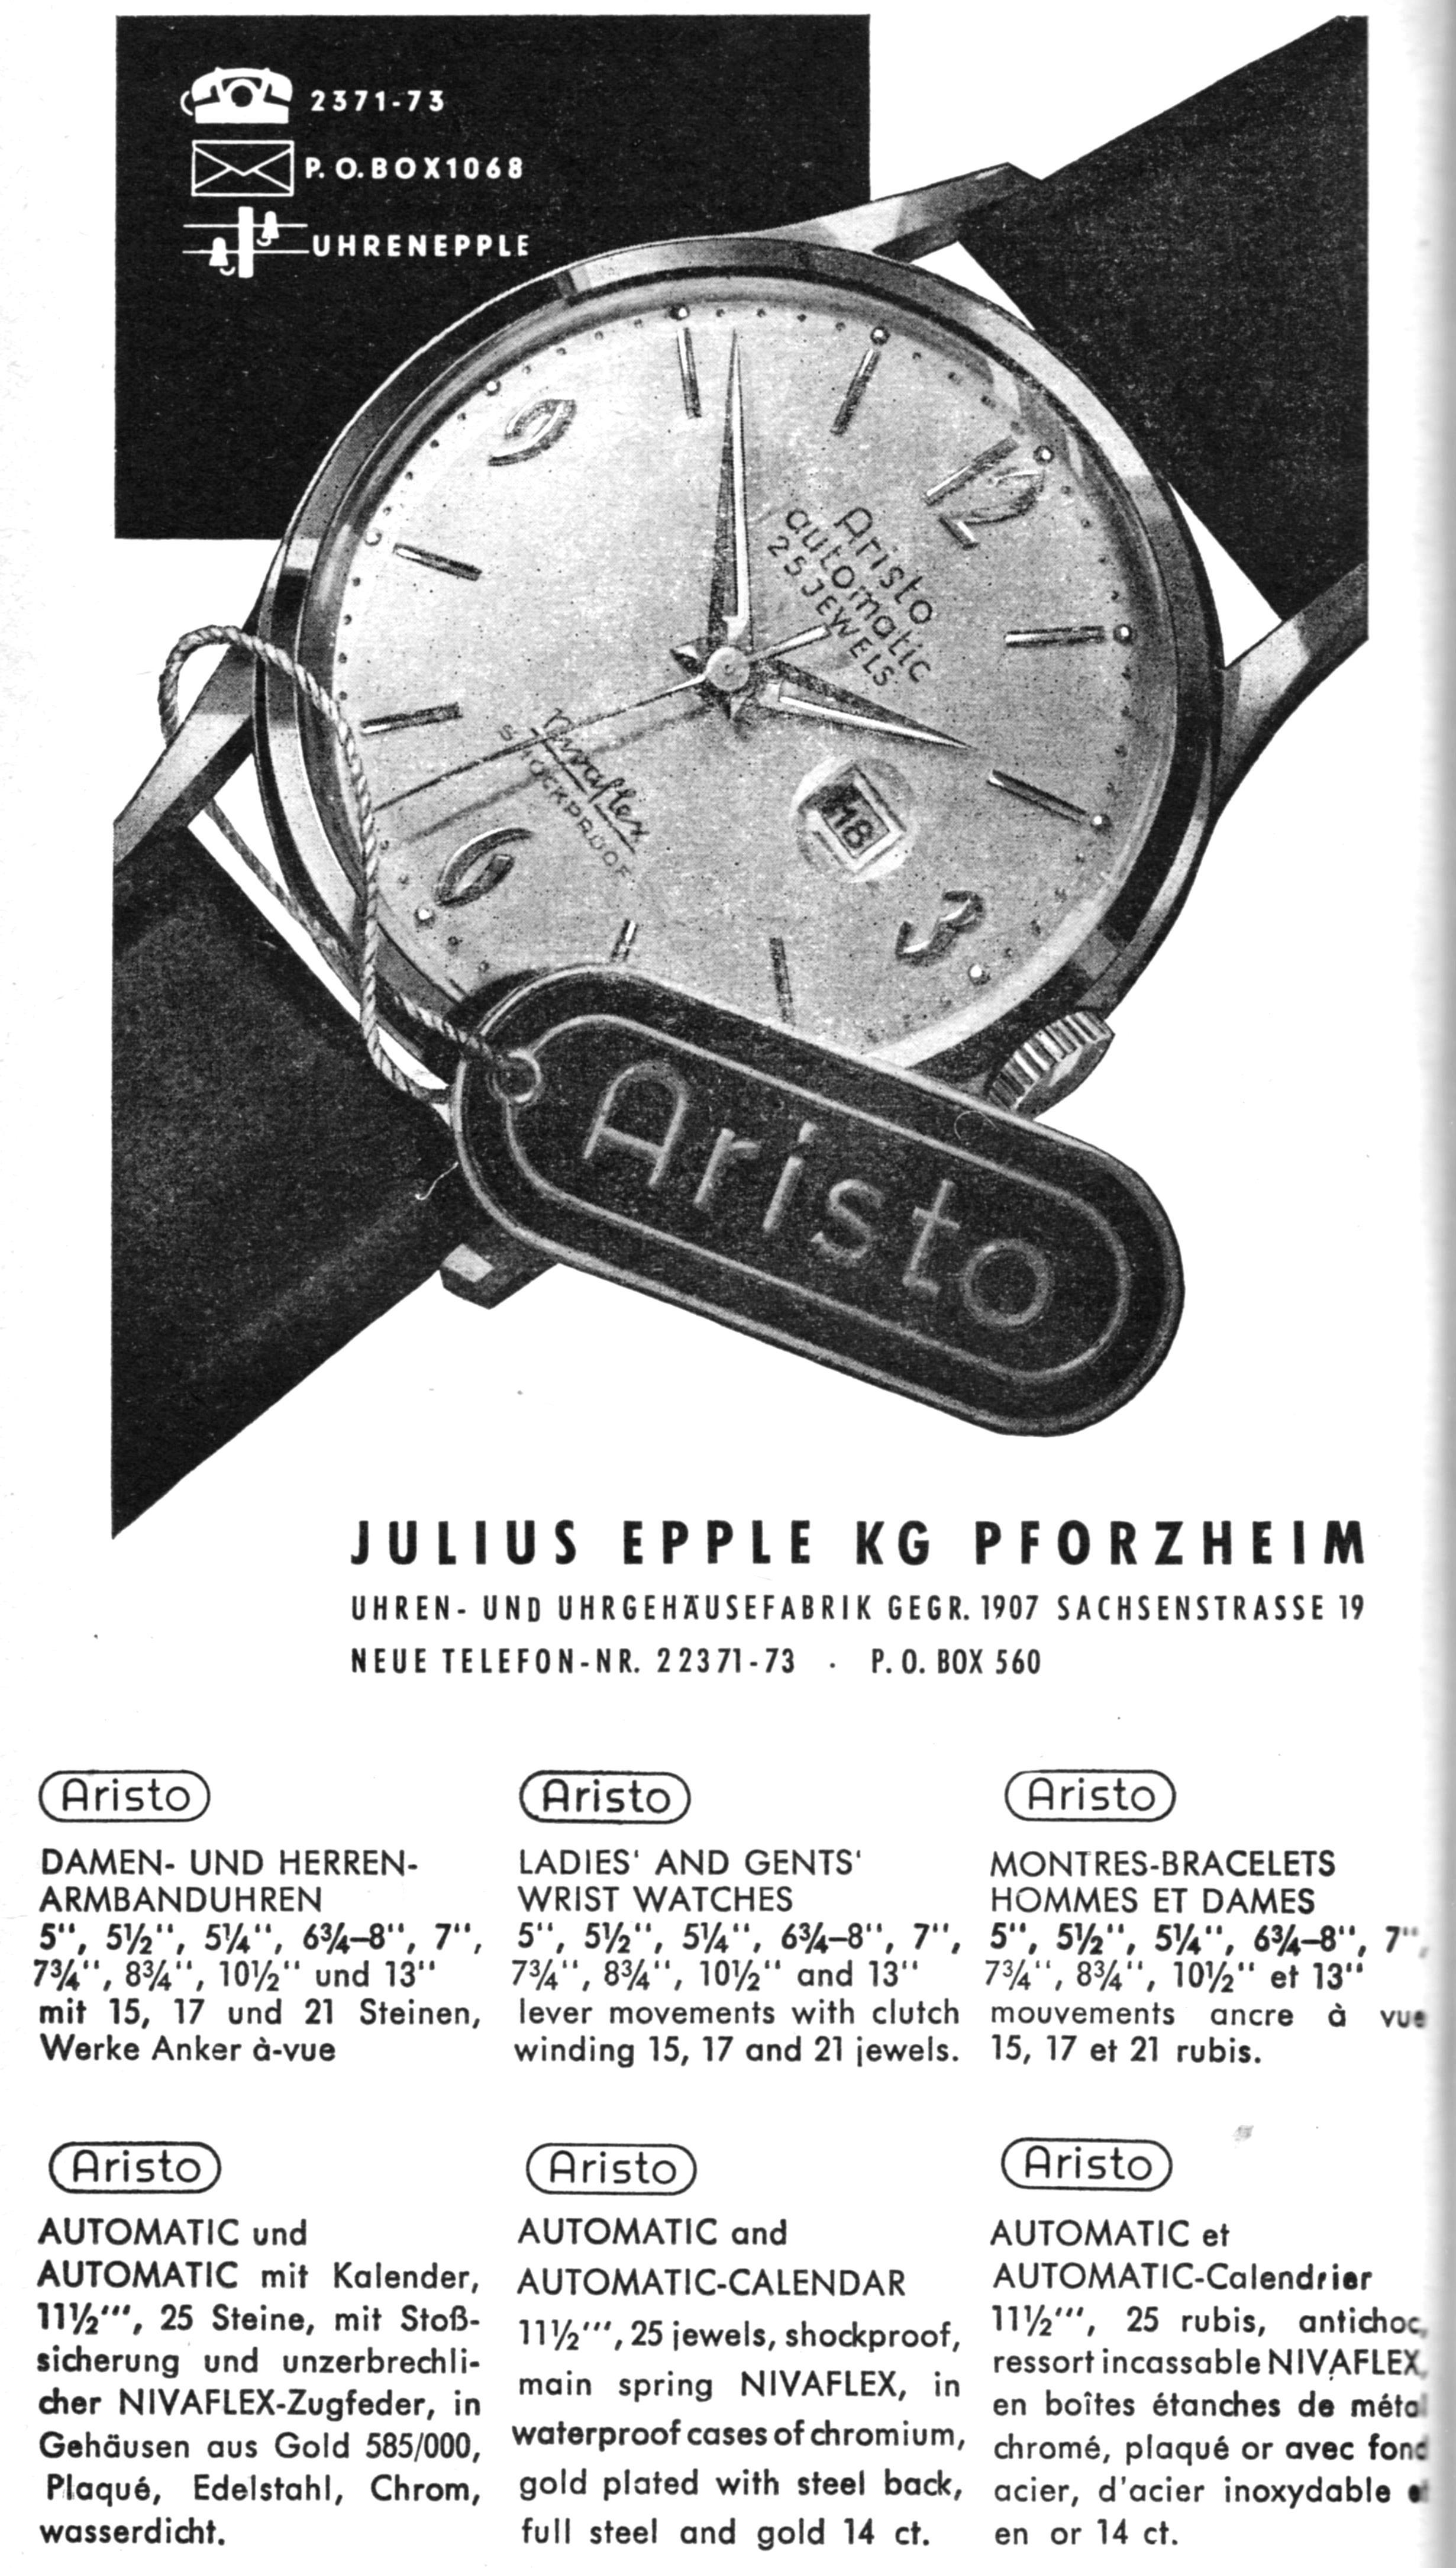 Aristo 1962.jpg